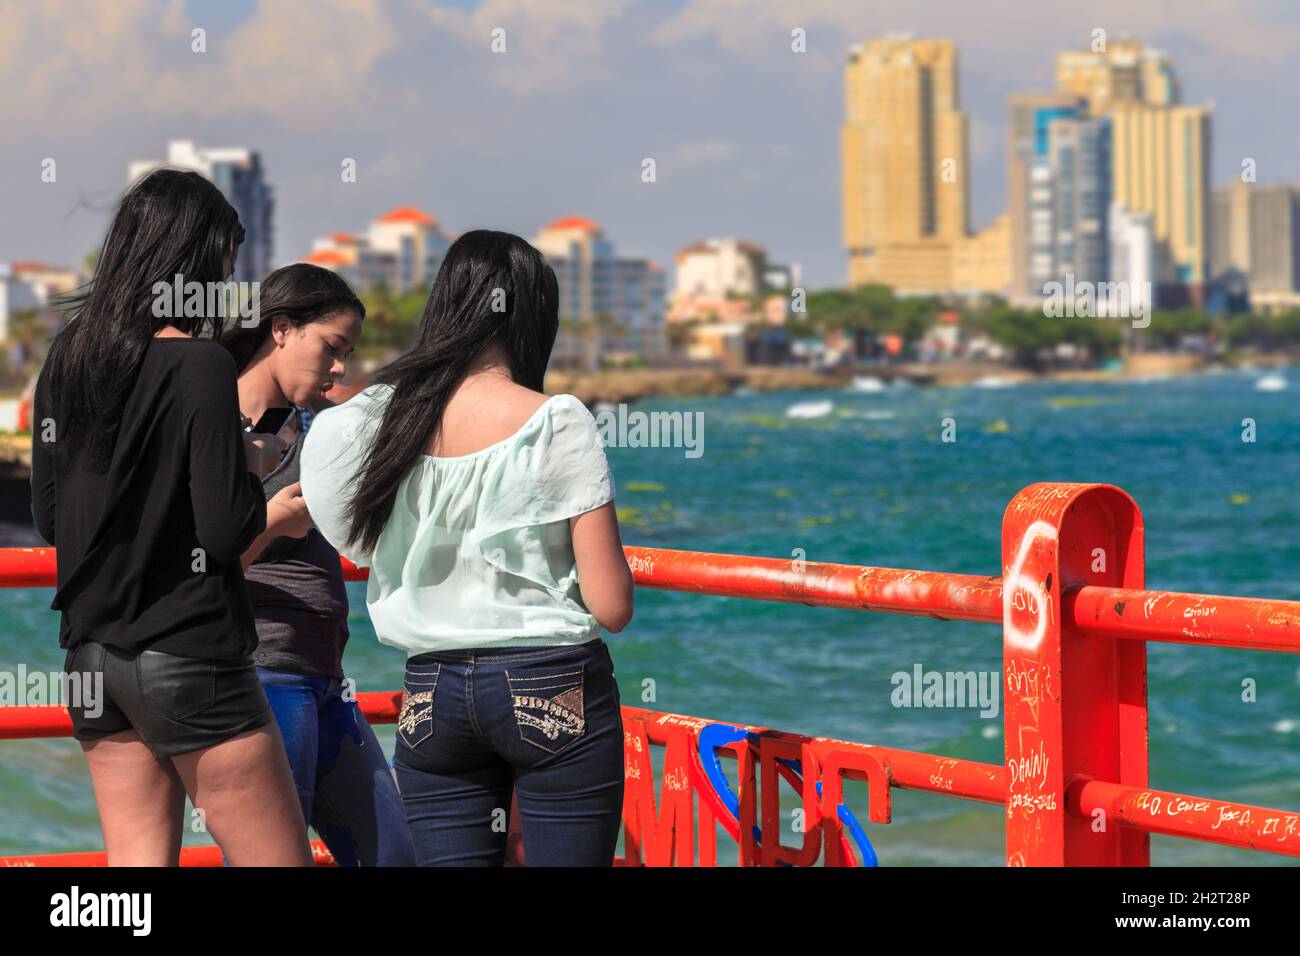 Santo Domingo, Distrito Nacional, Dominican Republic - April 23, 2016: Three Hispanic young ladies standing on a pier in the Latin American country Dominican Republic. Stock Photo